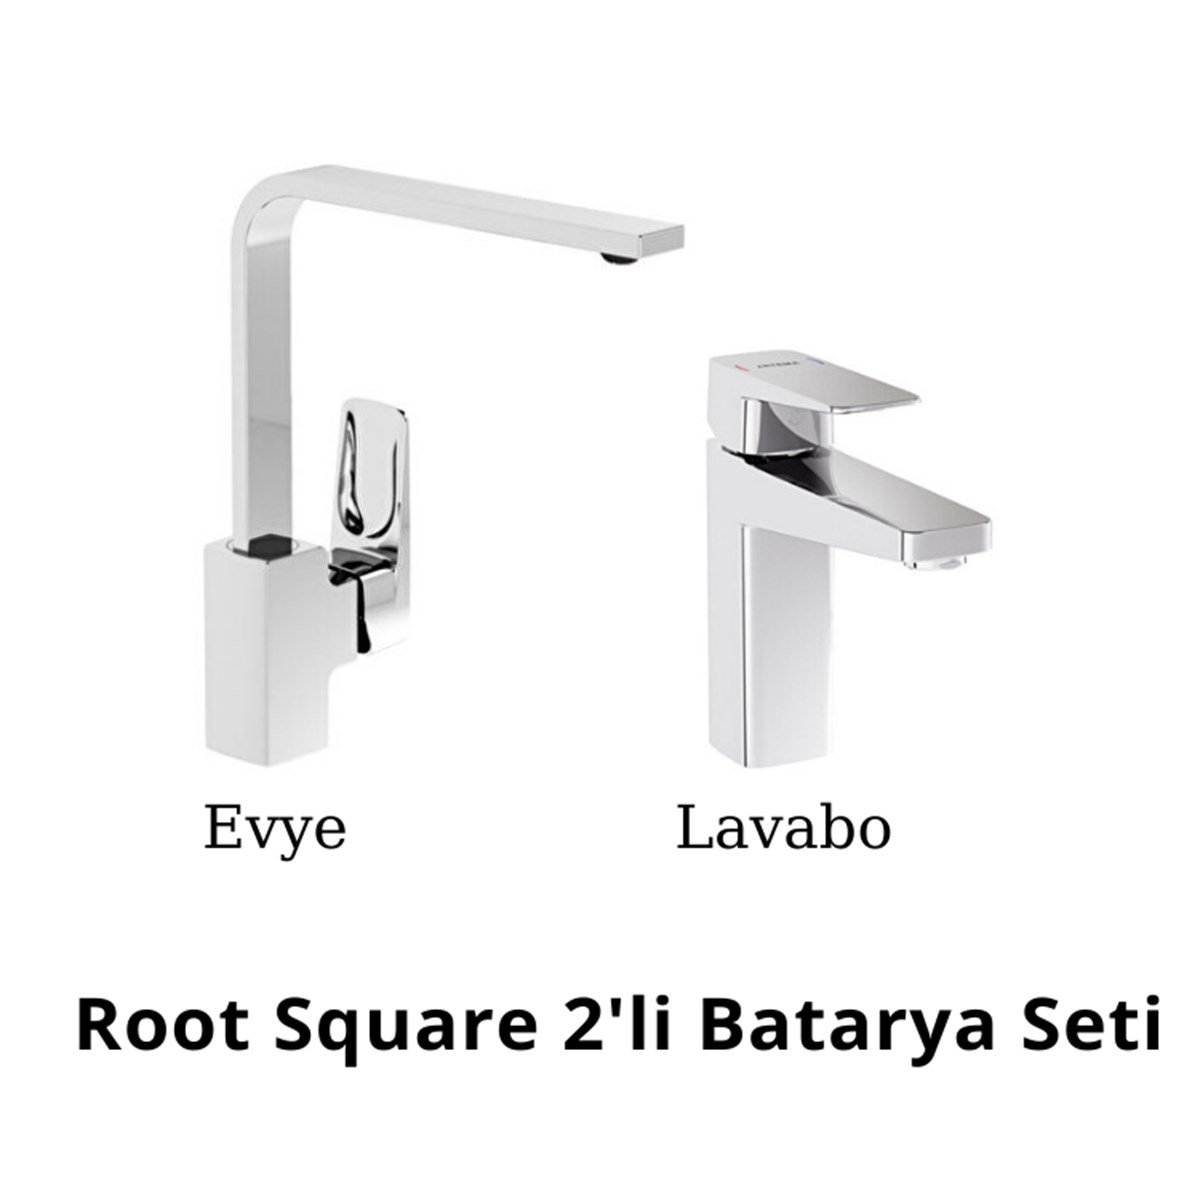 Artema Root Square 2'li Batarya Seti (Lavabo+Evye);ürünü yüksel kalite  standartlarında üretilmiştir.Özgün tasarımın Türk işçiliğiyle birleştiği  elit tercih.